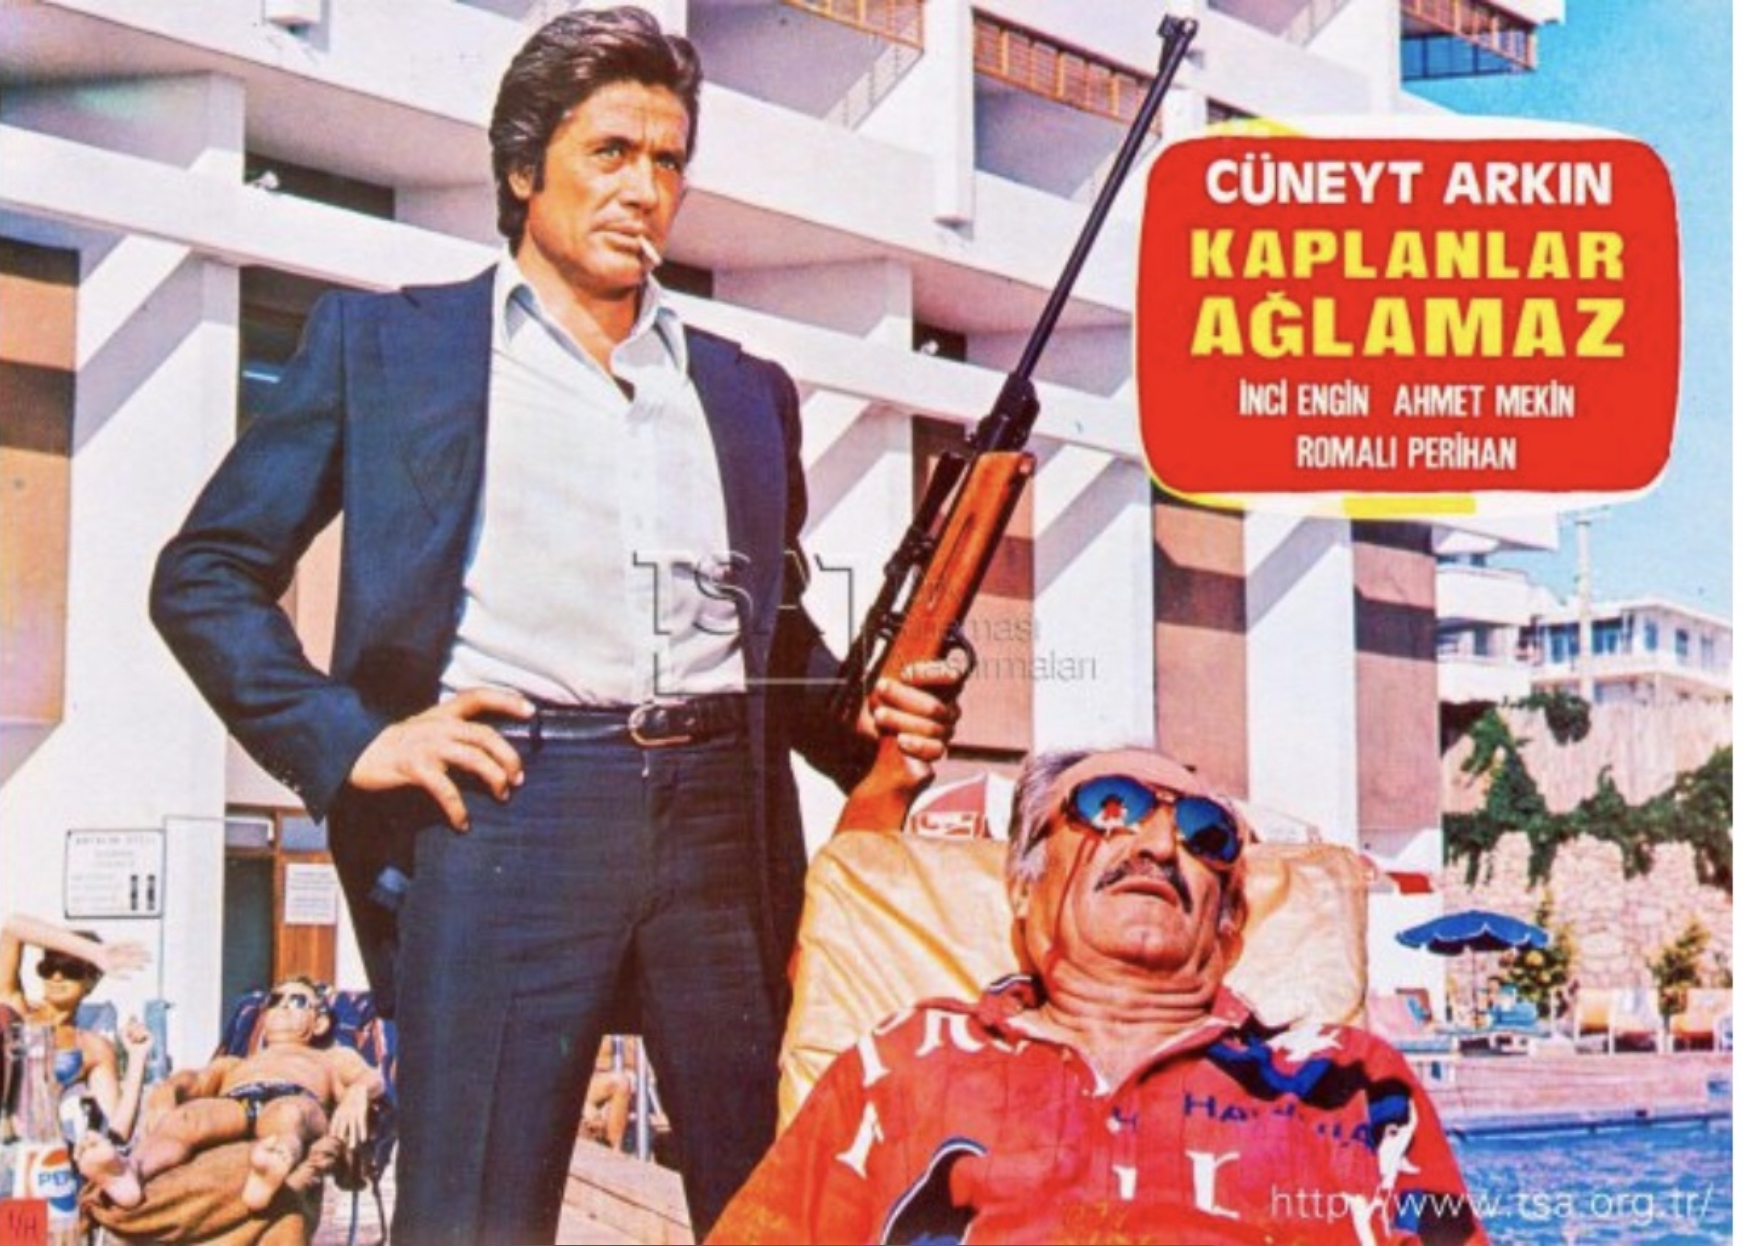 Kaplanlar Aglamaz (1978) Screenshot 5